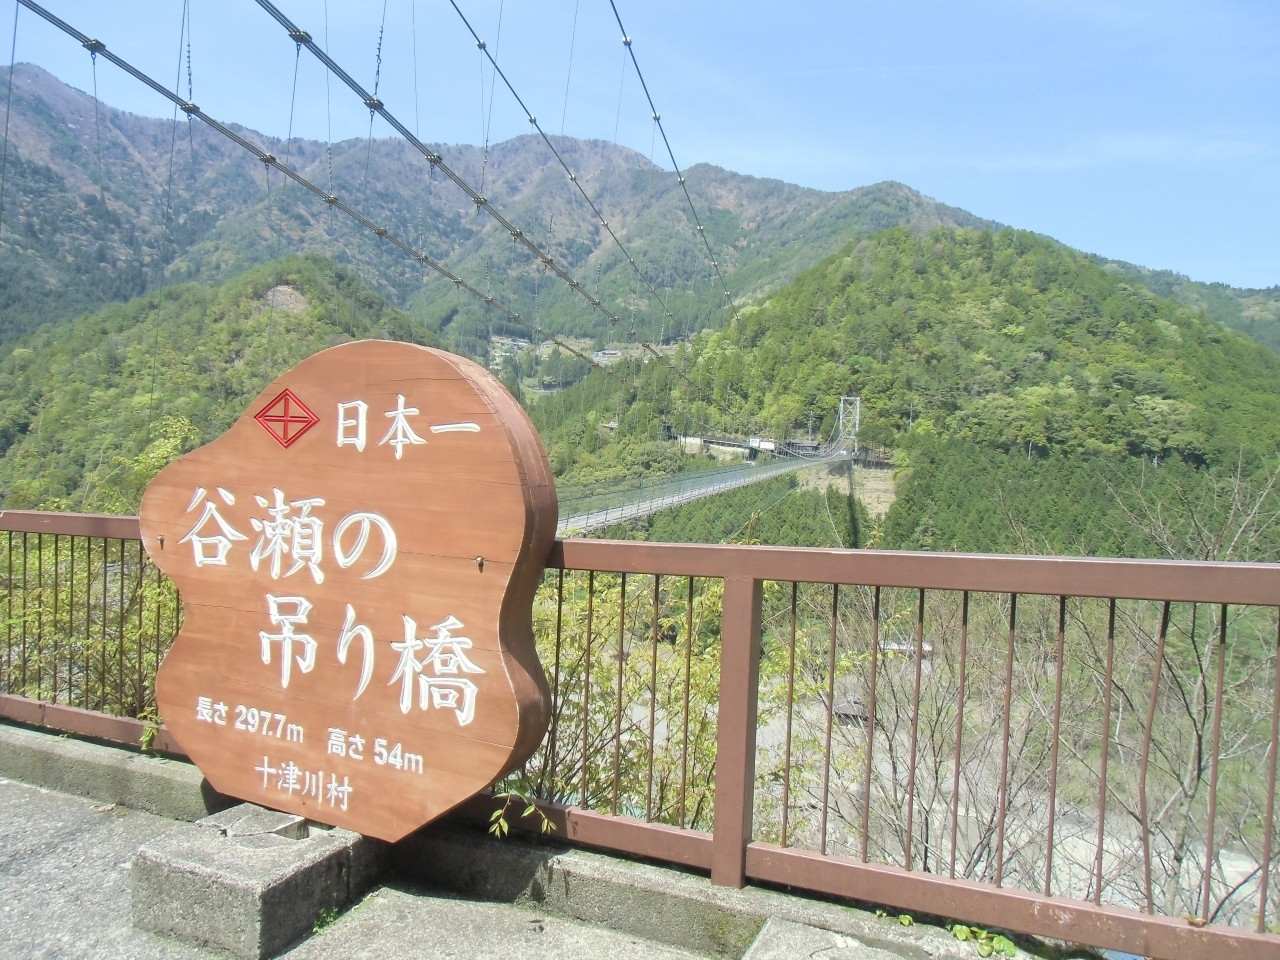 奈良を代表する吊り橋「谷瀬の吊り橋」79994